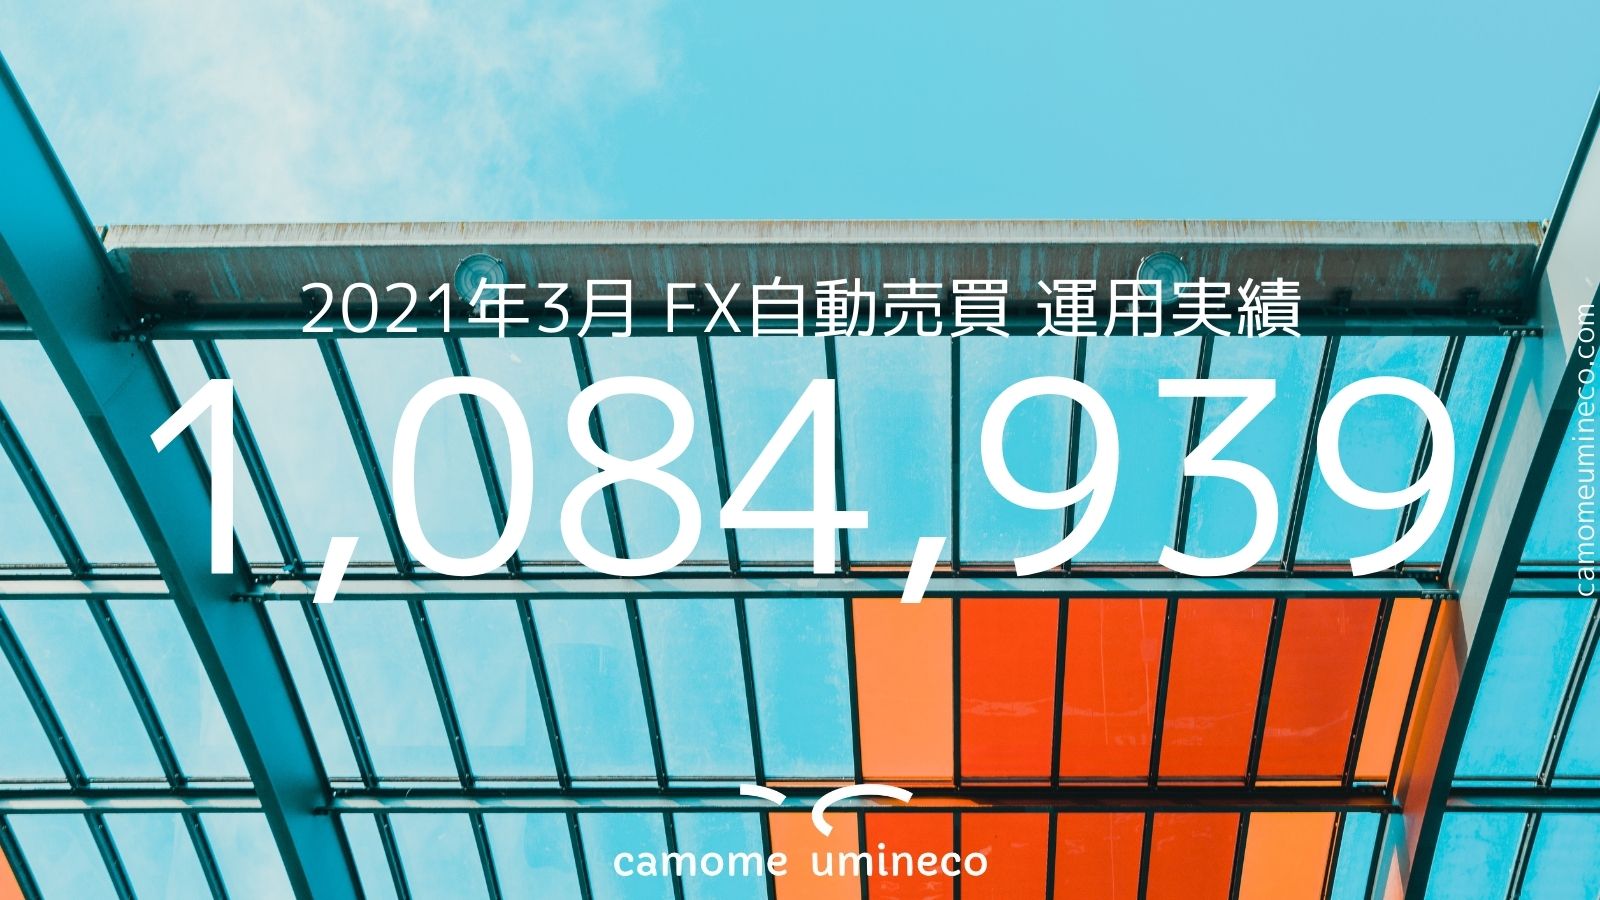 【トライオートFX】2021年3月 運用実績 1,084,939円